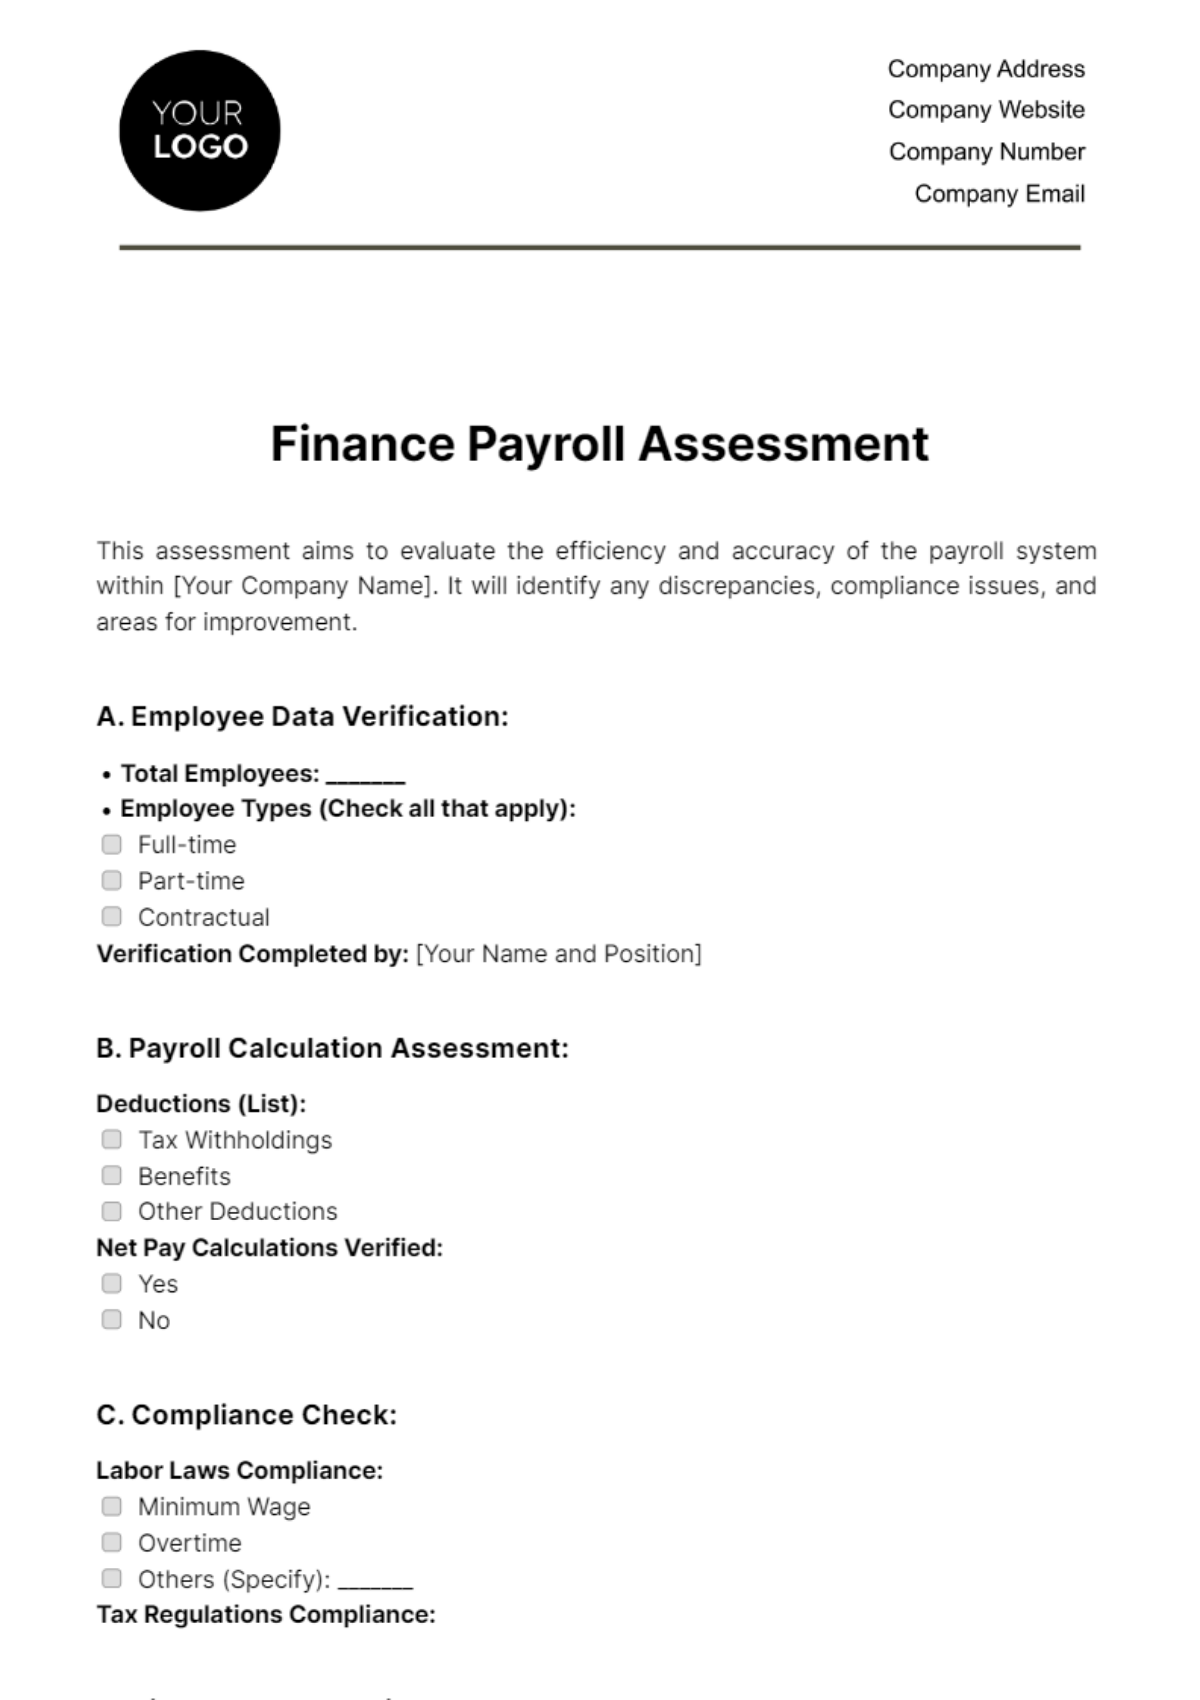 Finance Payroll Assessment Template